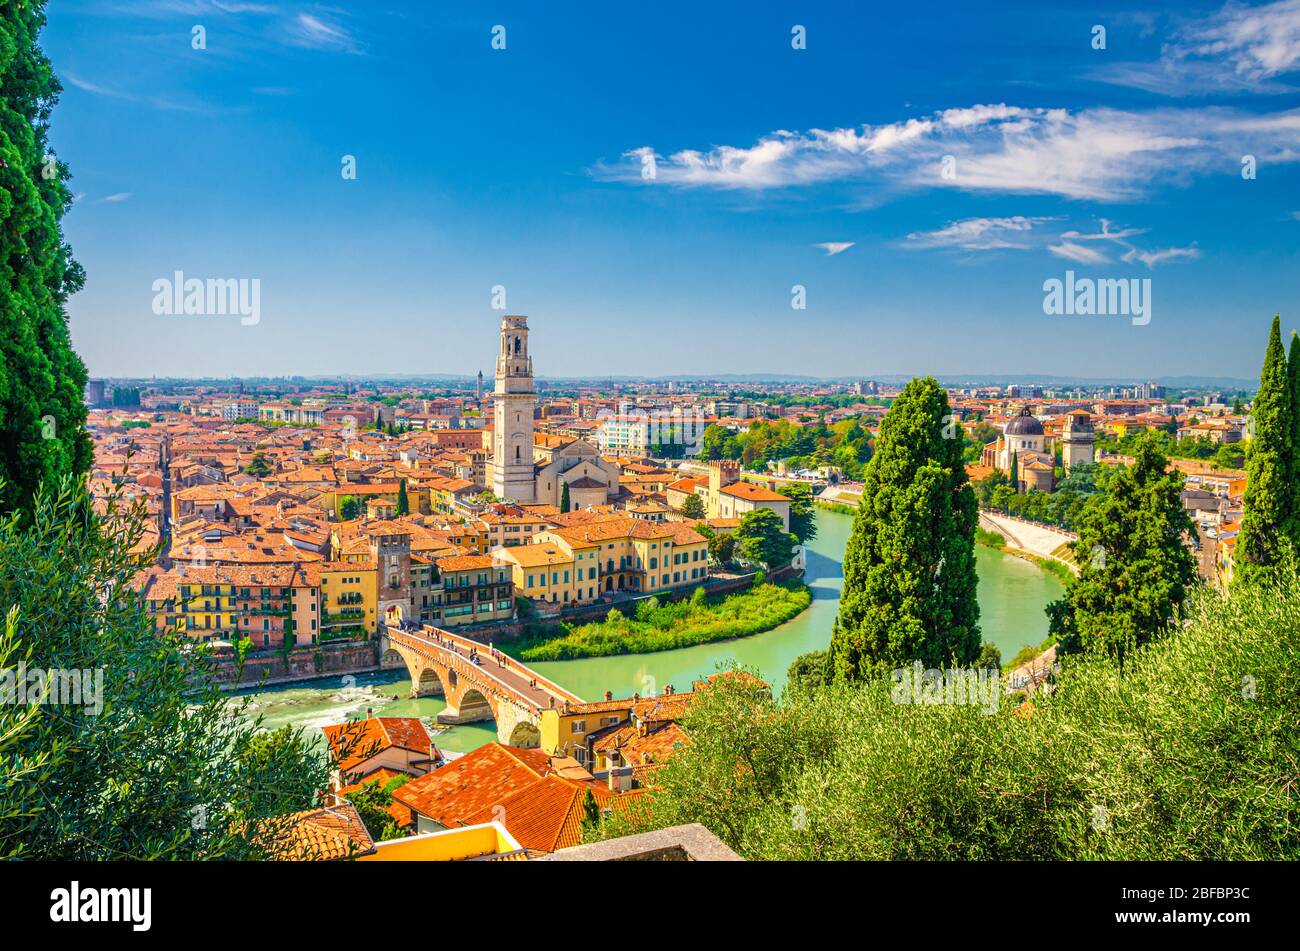 Veduta aerea del centro storico di Verona, ponte pietra sul fiume Adige, Duomo di Verona, Duomo di Verona, tetti di tegole rosse, Veneto Regio Foto Stock